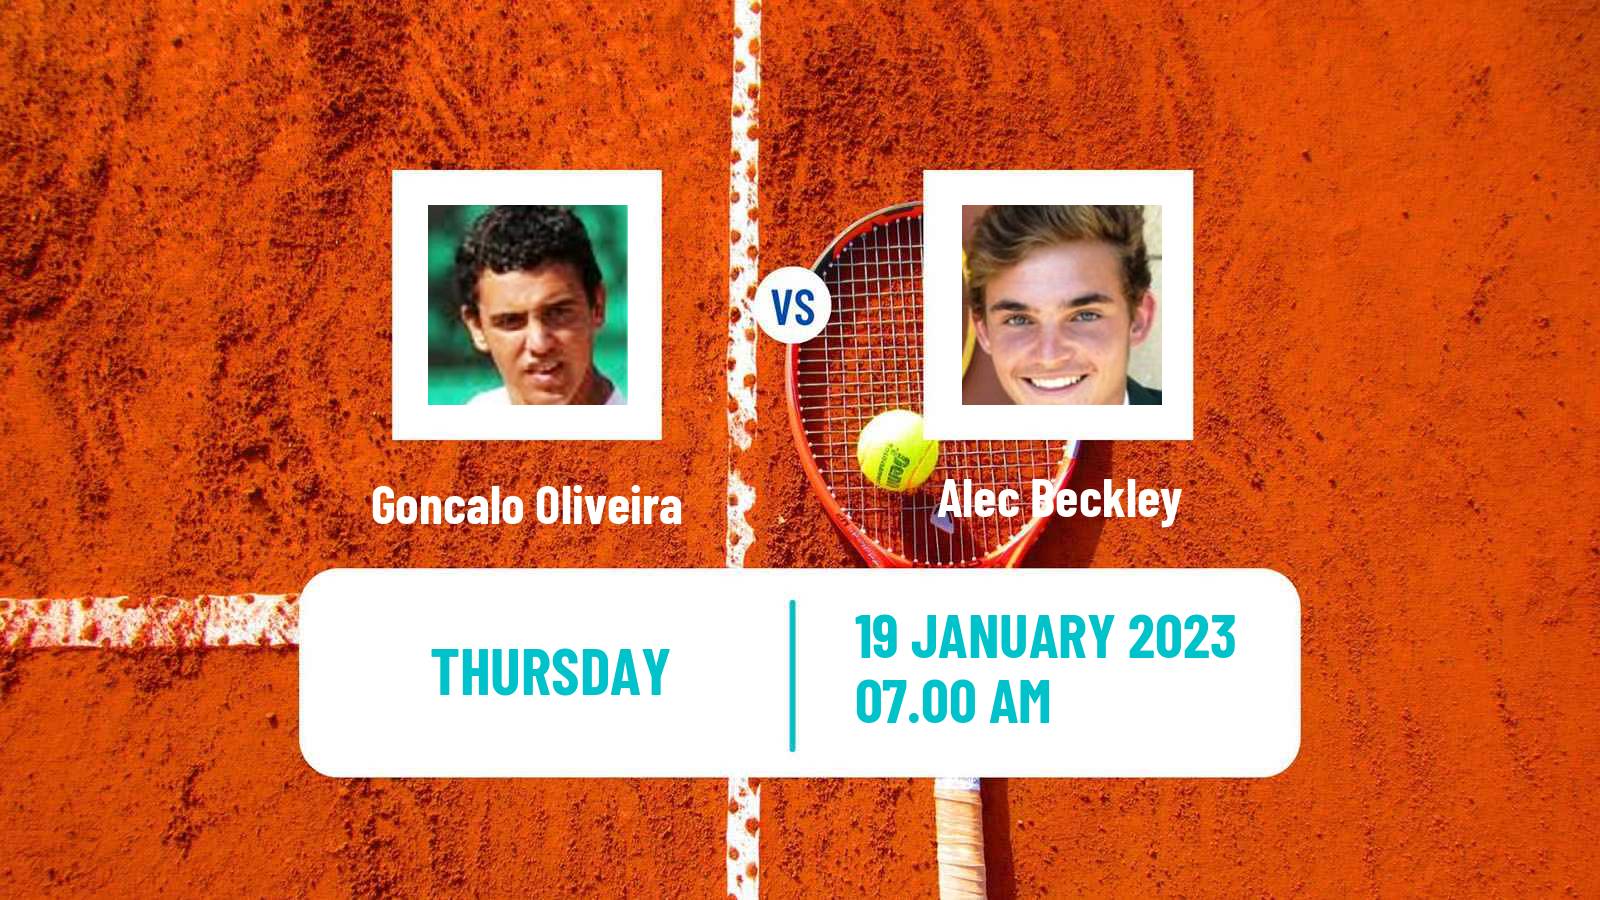 Tennis ITF Tournaments Goncalo Oliveira - Alec Beckley